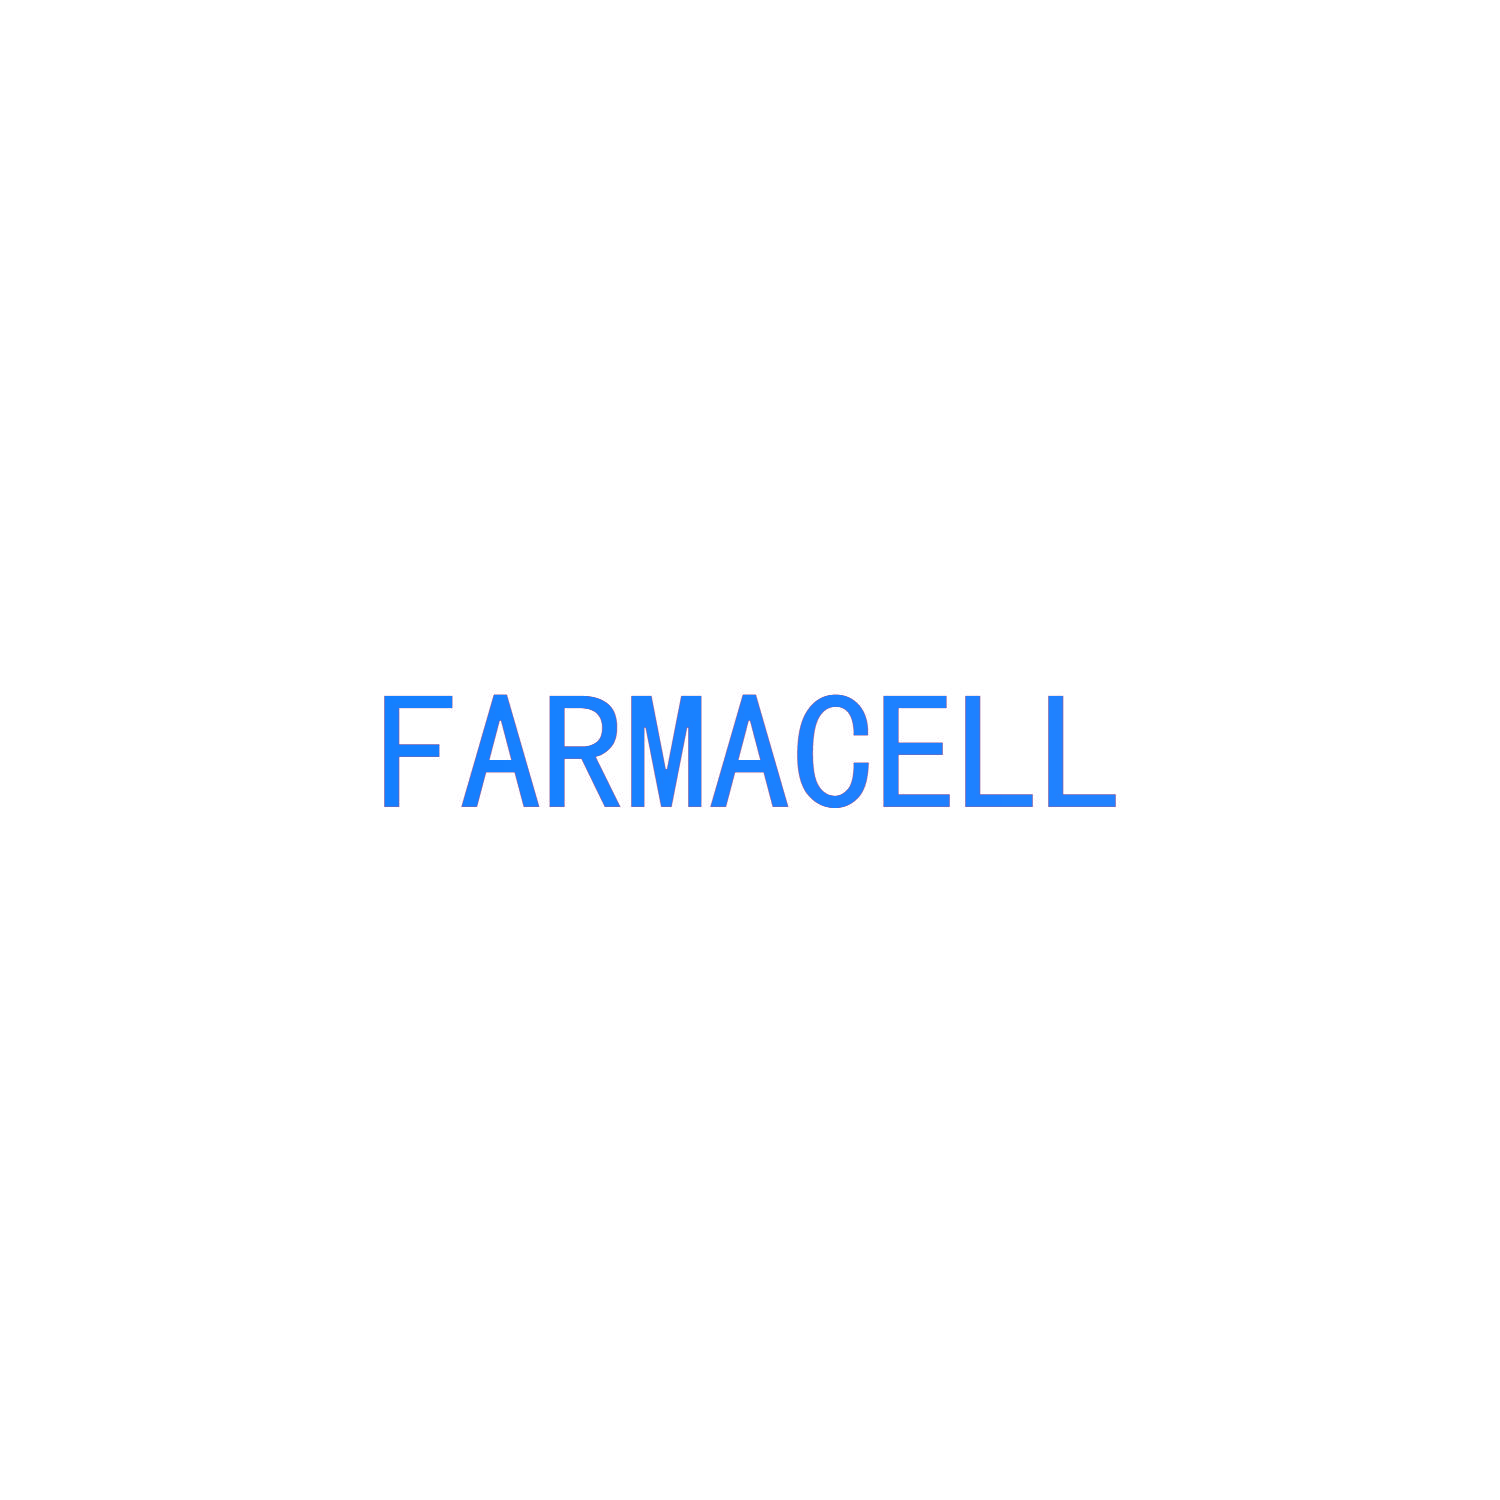 FARMACELL